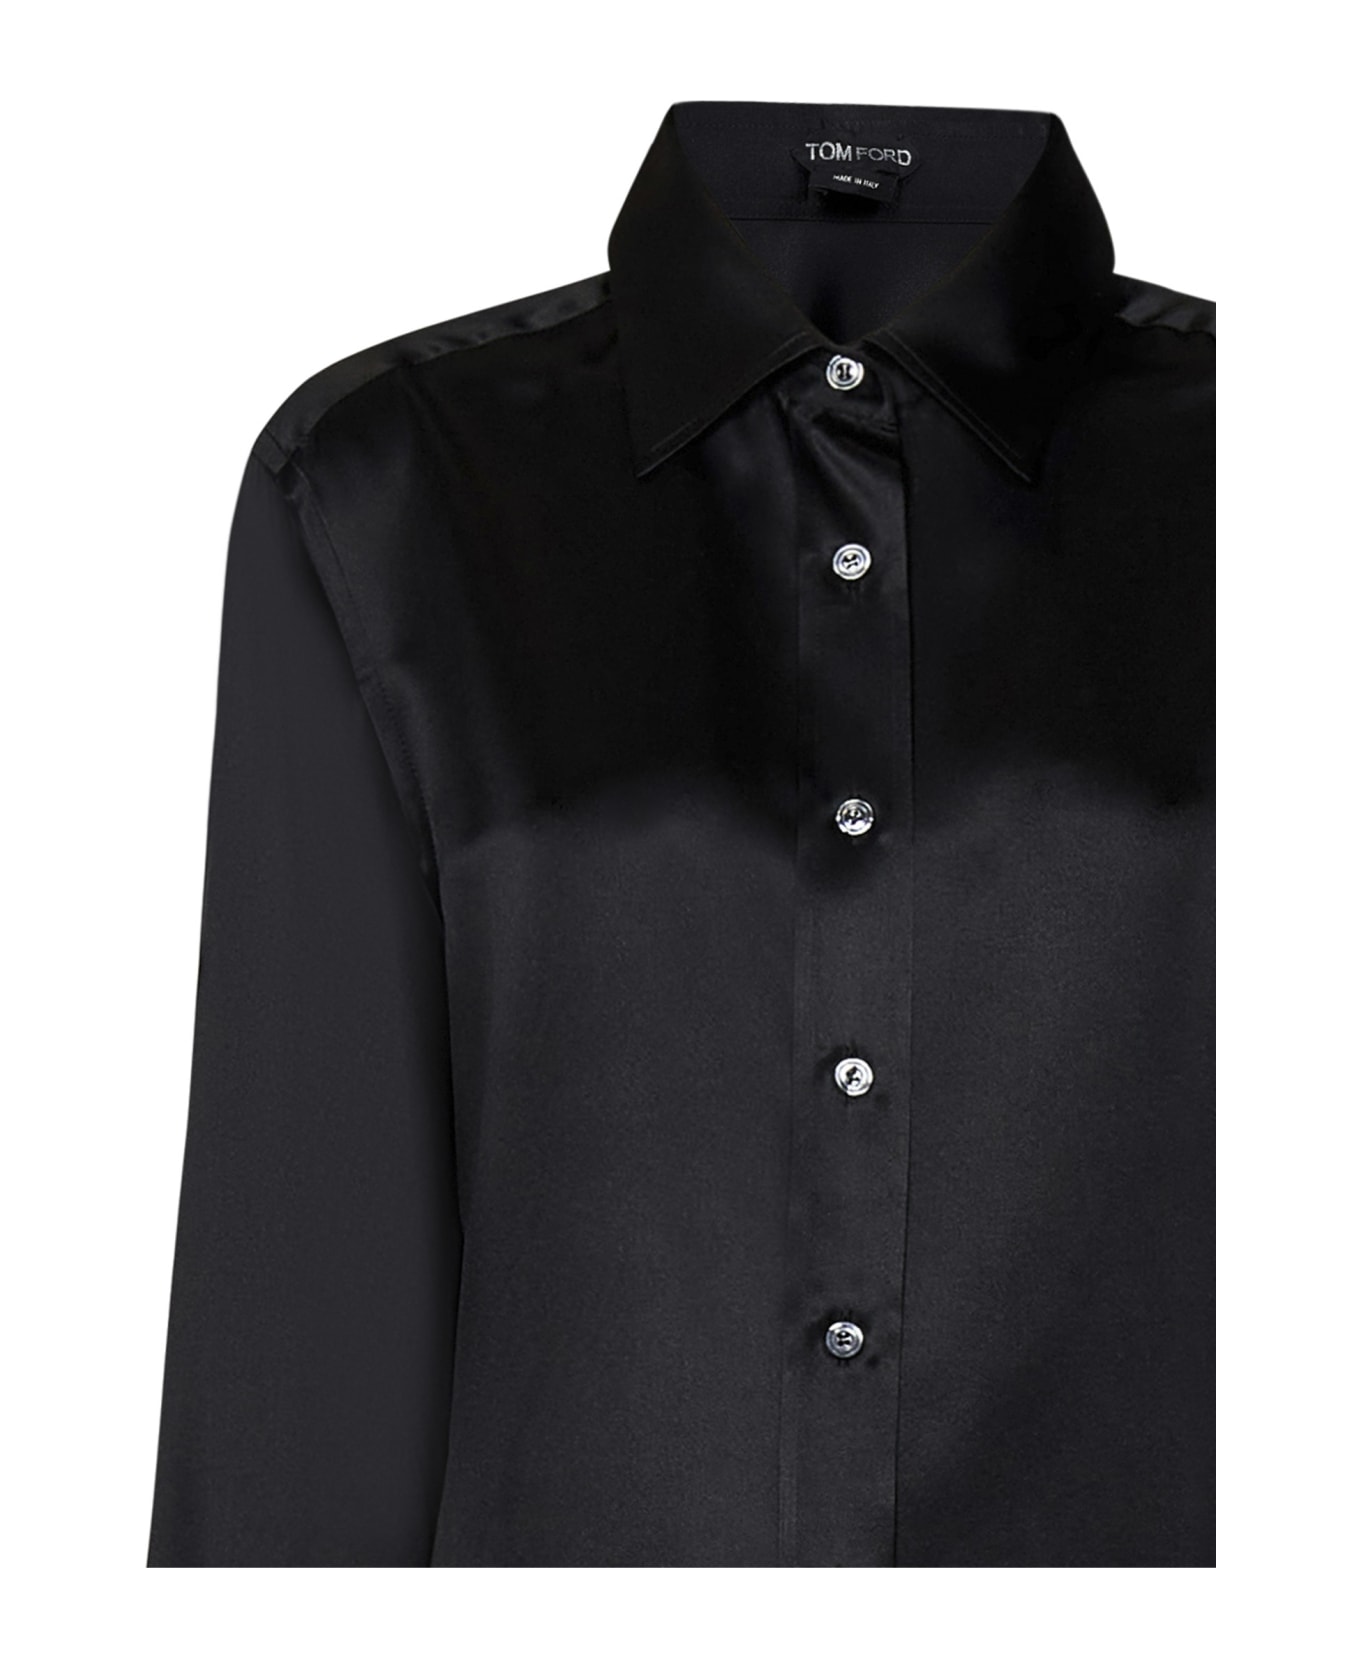 Tom Ford Satin Shirt - Black